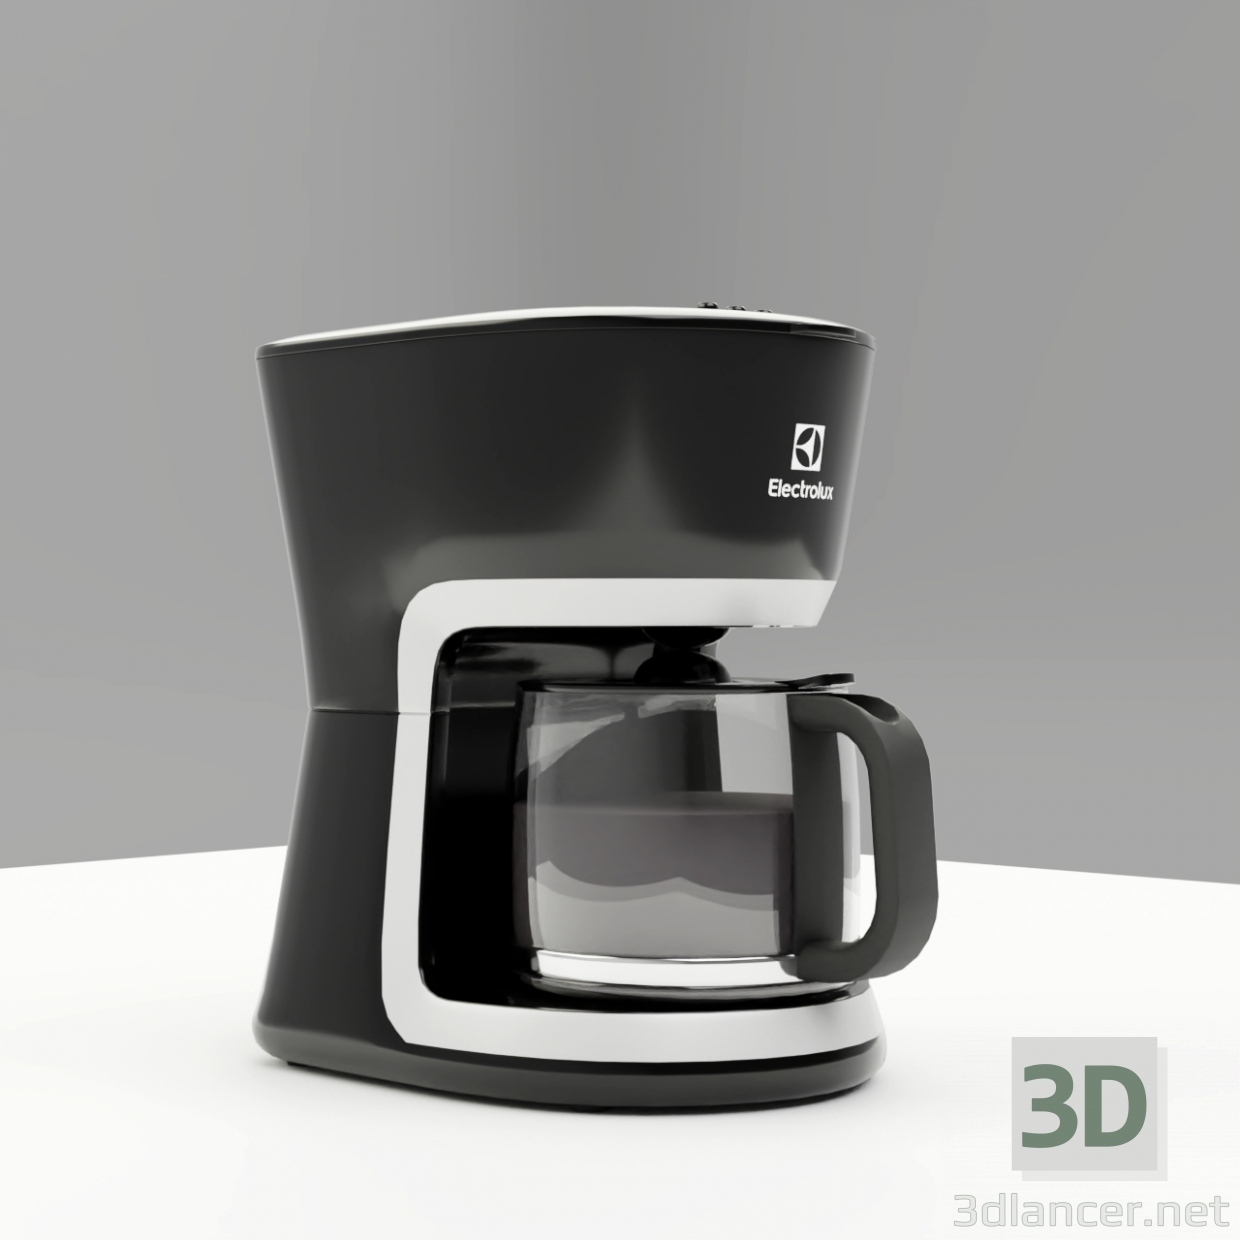 3D Electrolux Kahve Makinesi Ecm 3505 modeli satın - render